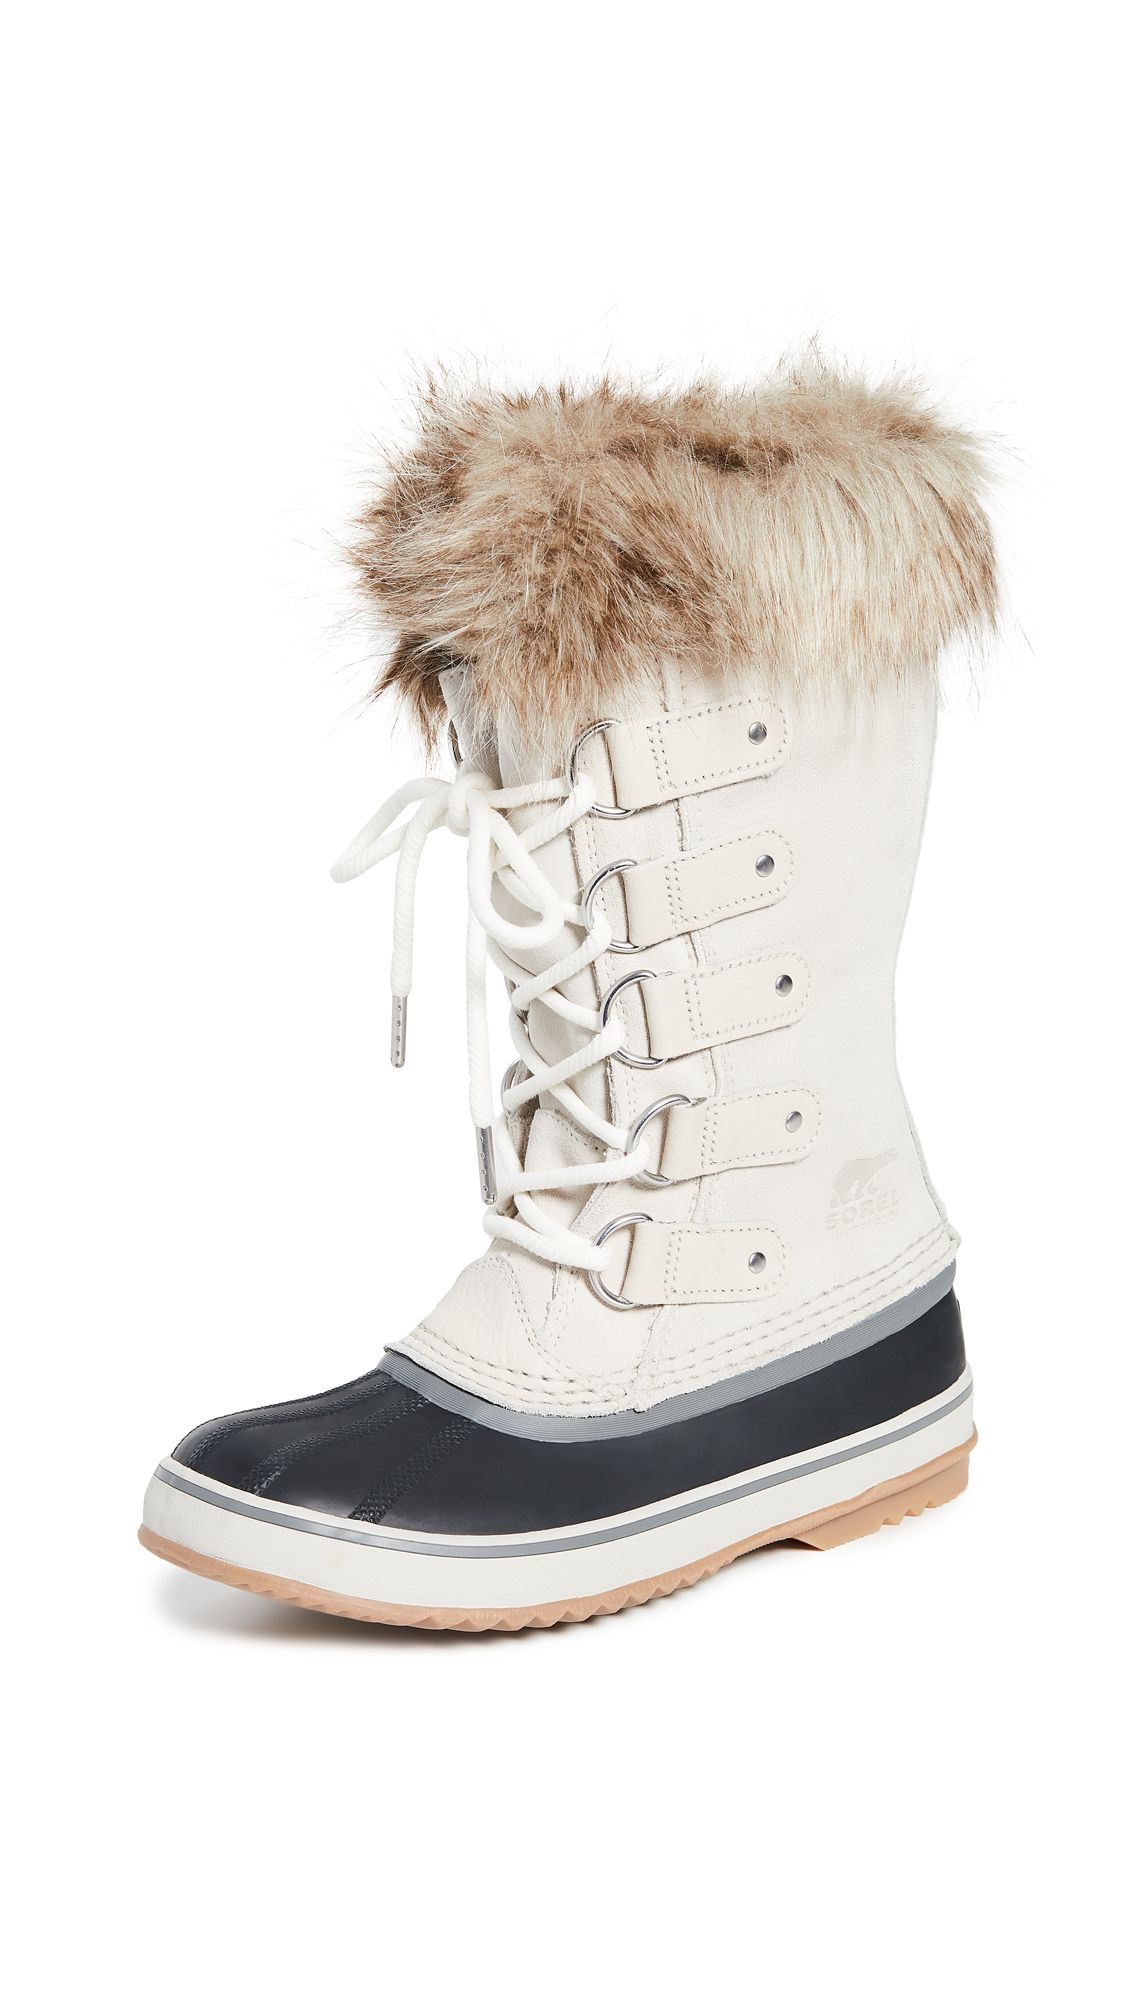 Sorel Joan of Arctic Boots | Shopbop